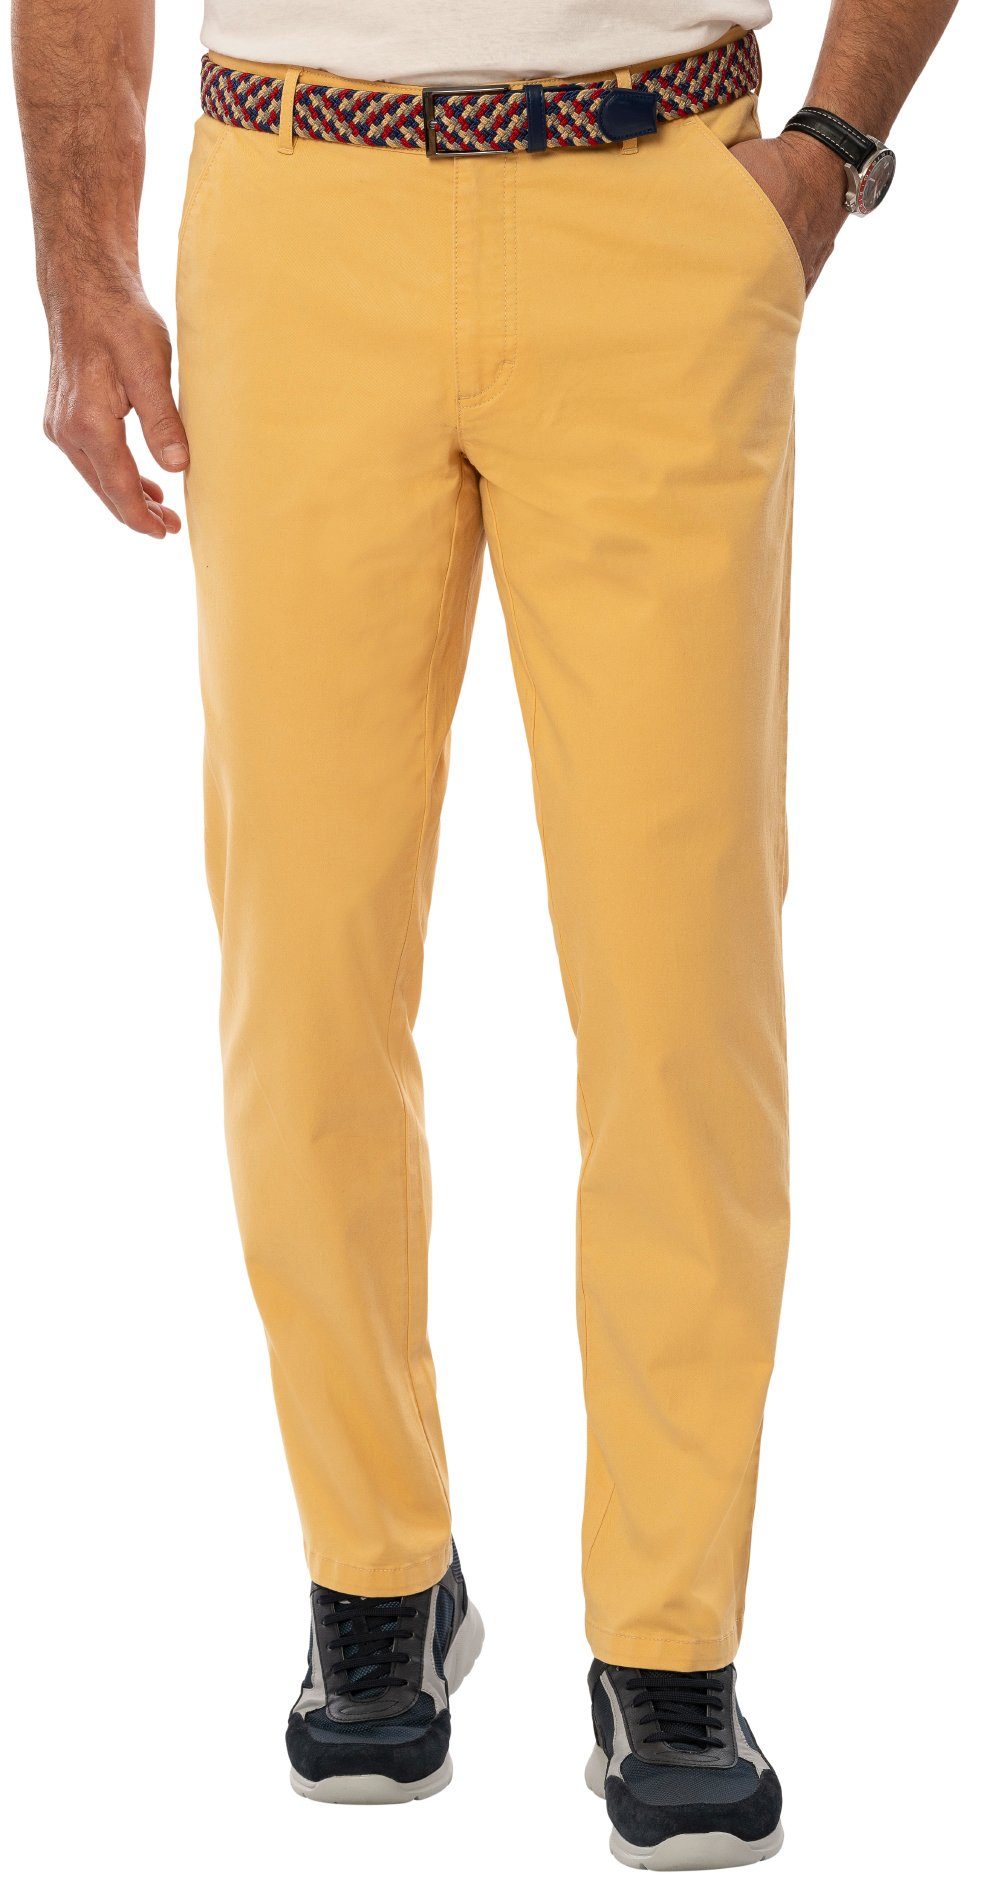 Suprax Chinos in gelb im Regular-fit-Passform, mit mehrfarbigem Chino-Stil und Flechtgürtel